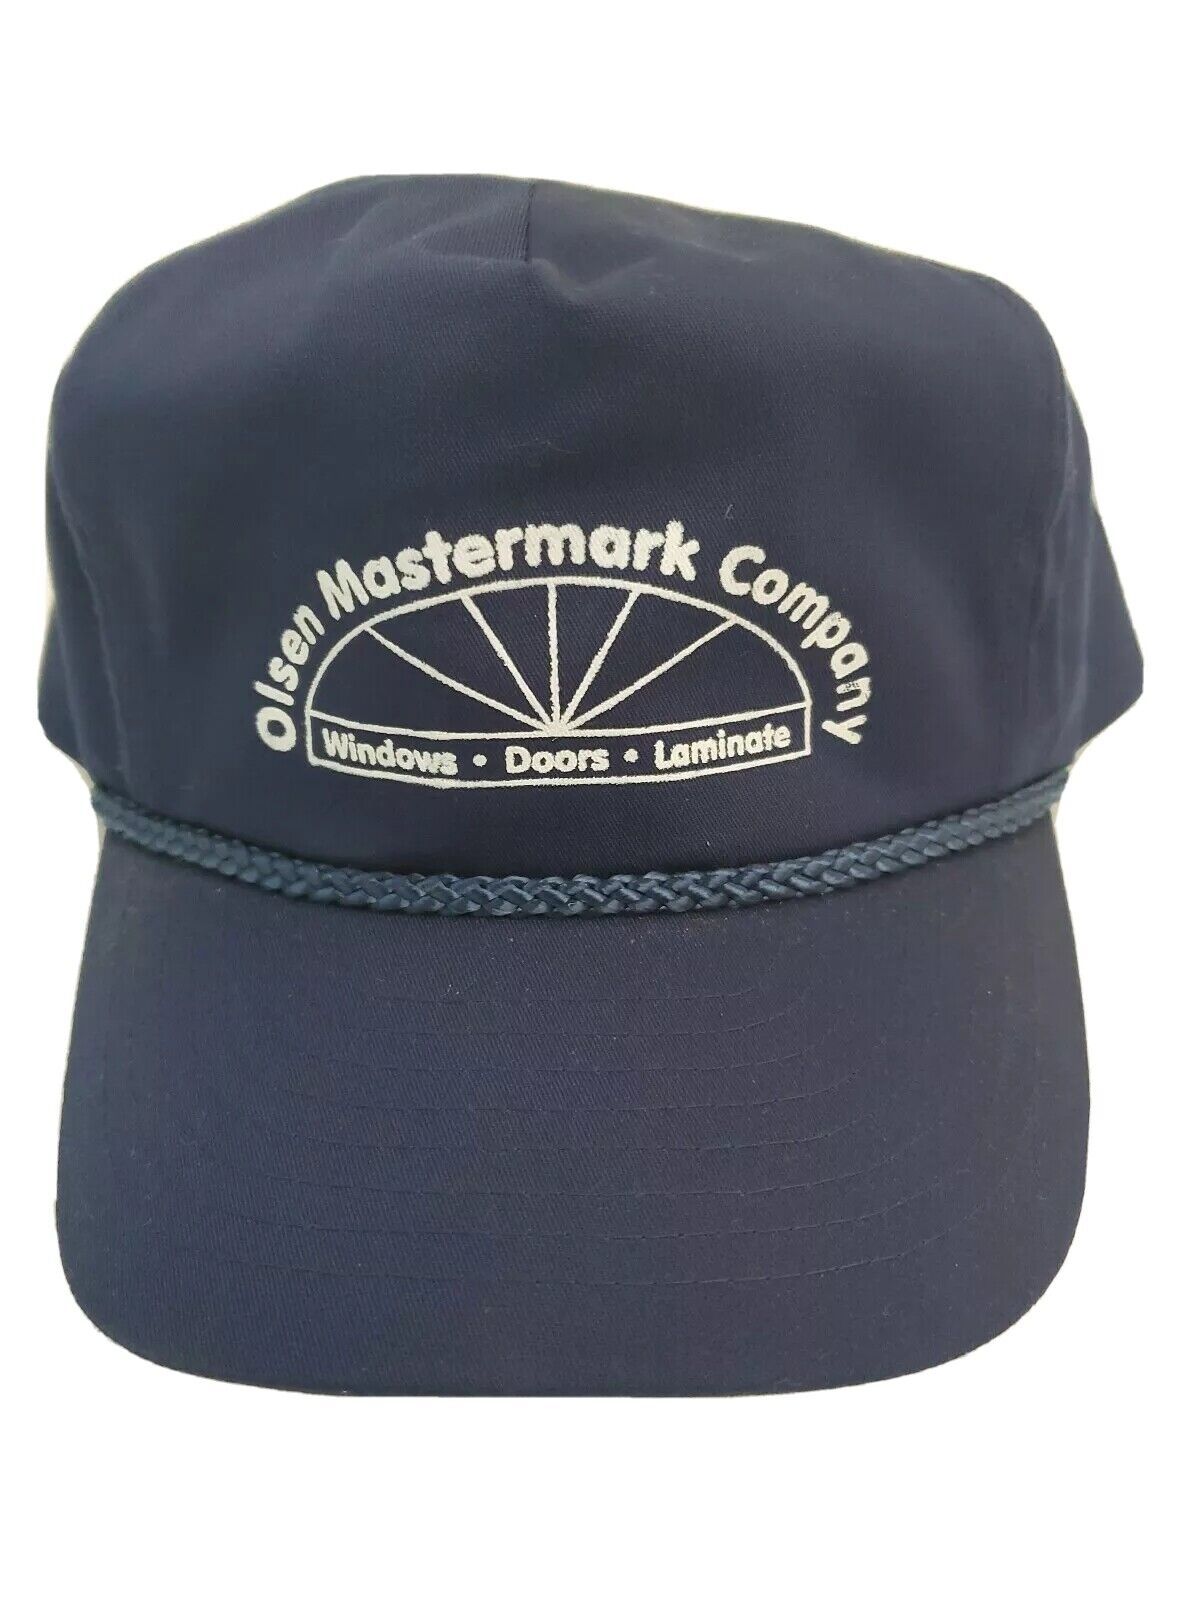 Trucker Hat Baseball Cap Adjustable Snapback Navy Blue Olsen Mastermark Company